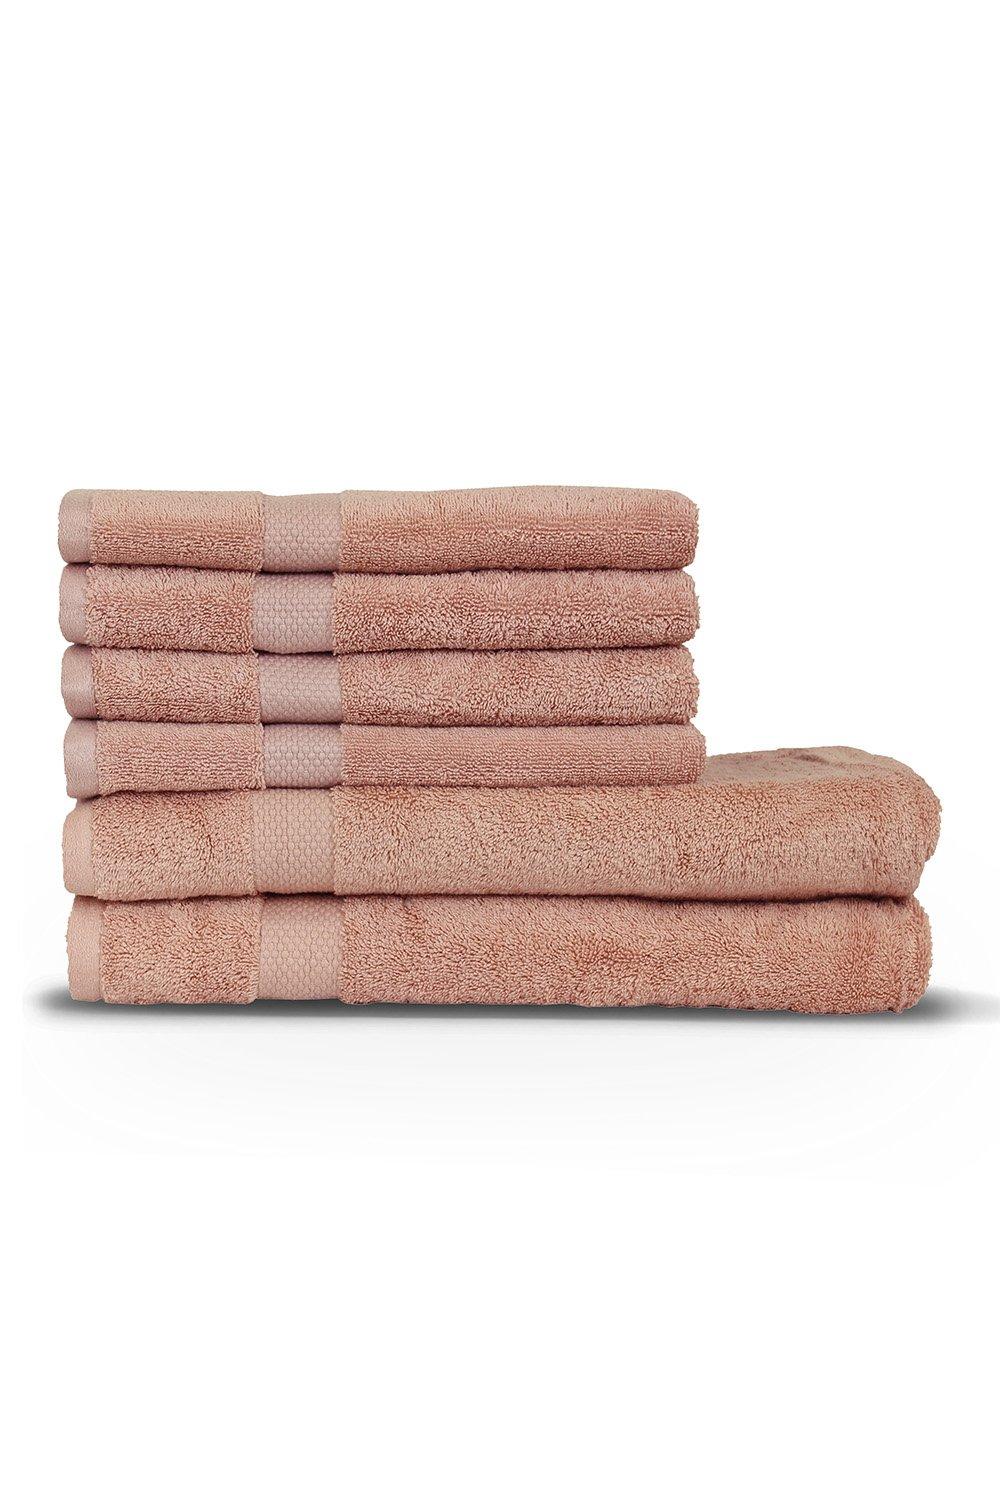 Loft Combed Cotton 6-Piece Hand/Bath Sheet Towel Bale